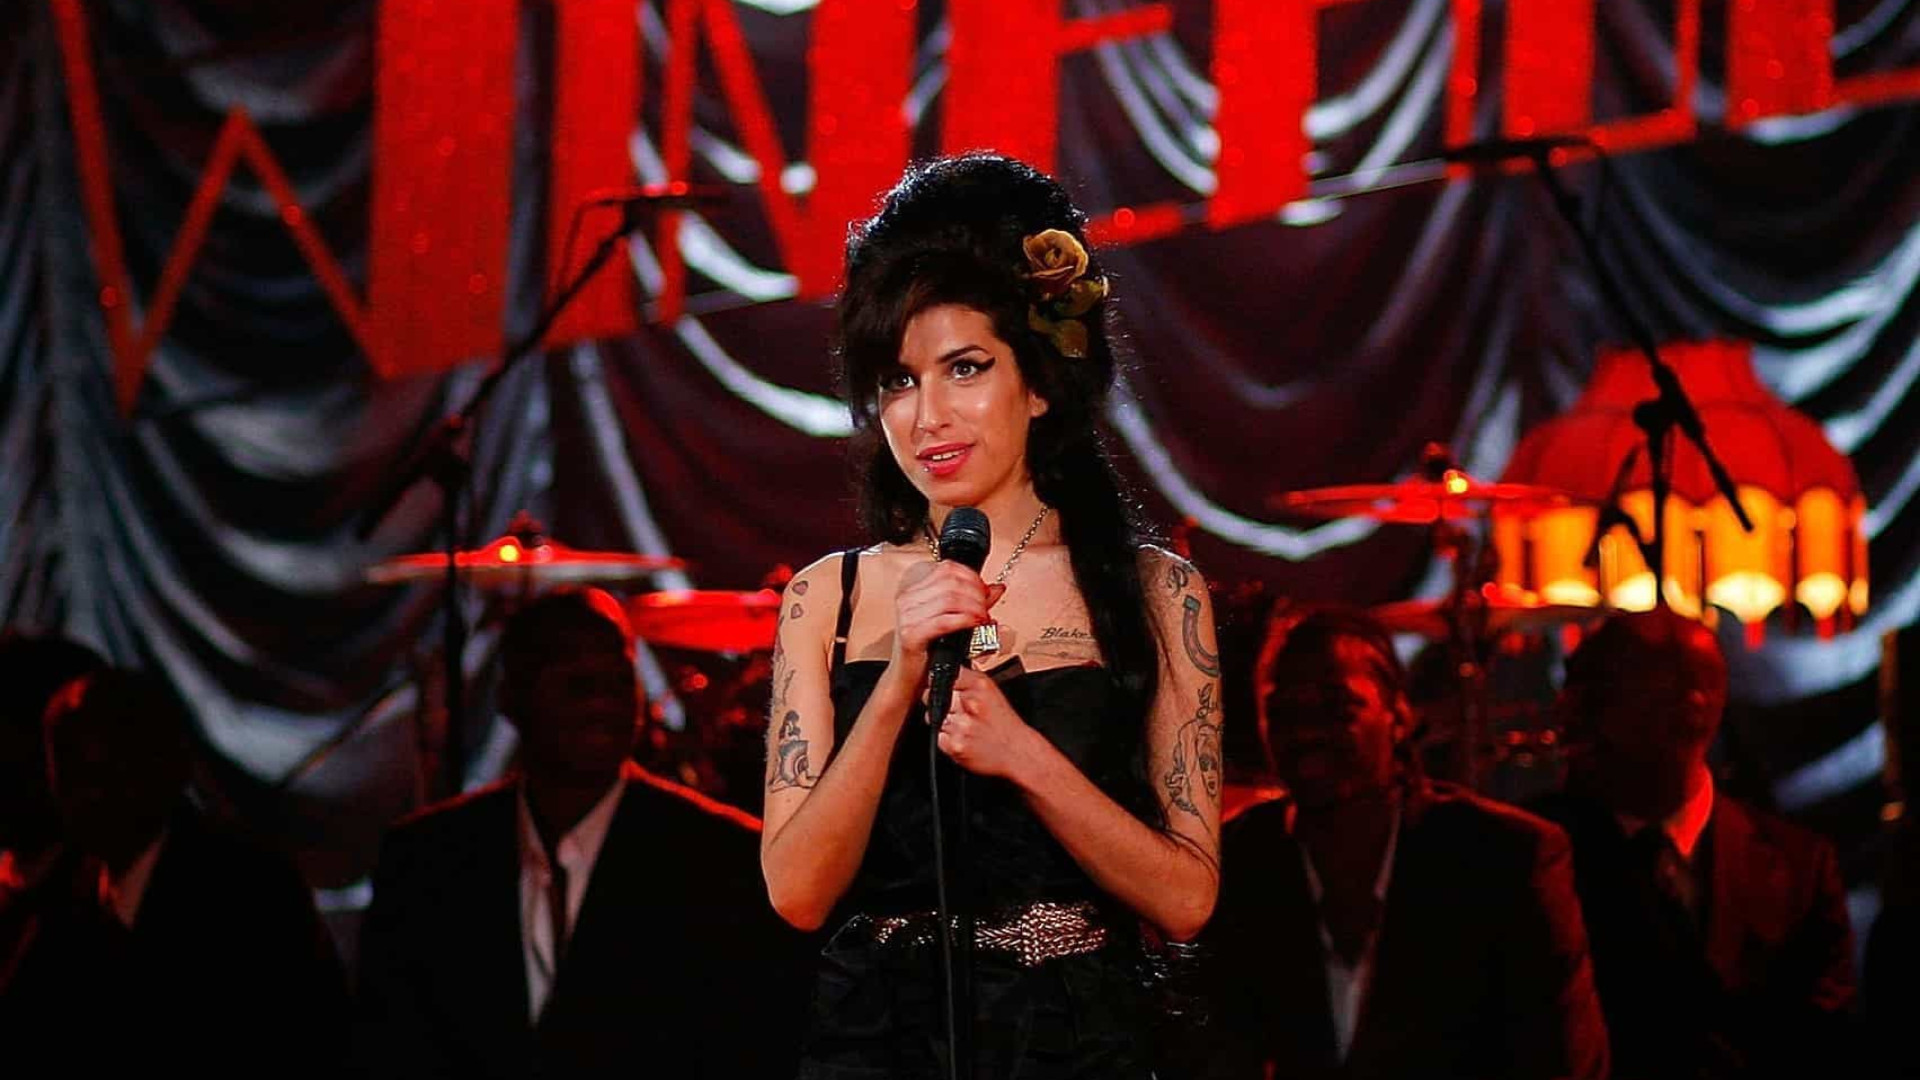 Amy Winehouse, se estivesse viva, teria largado a música e o vício, diz amigo